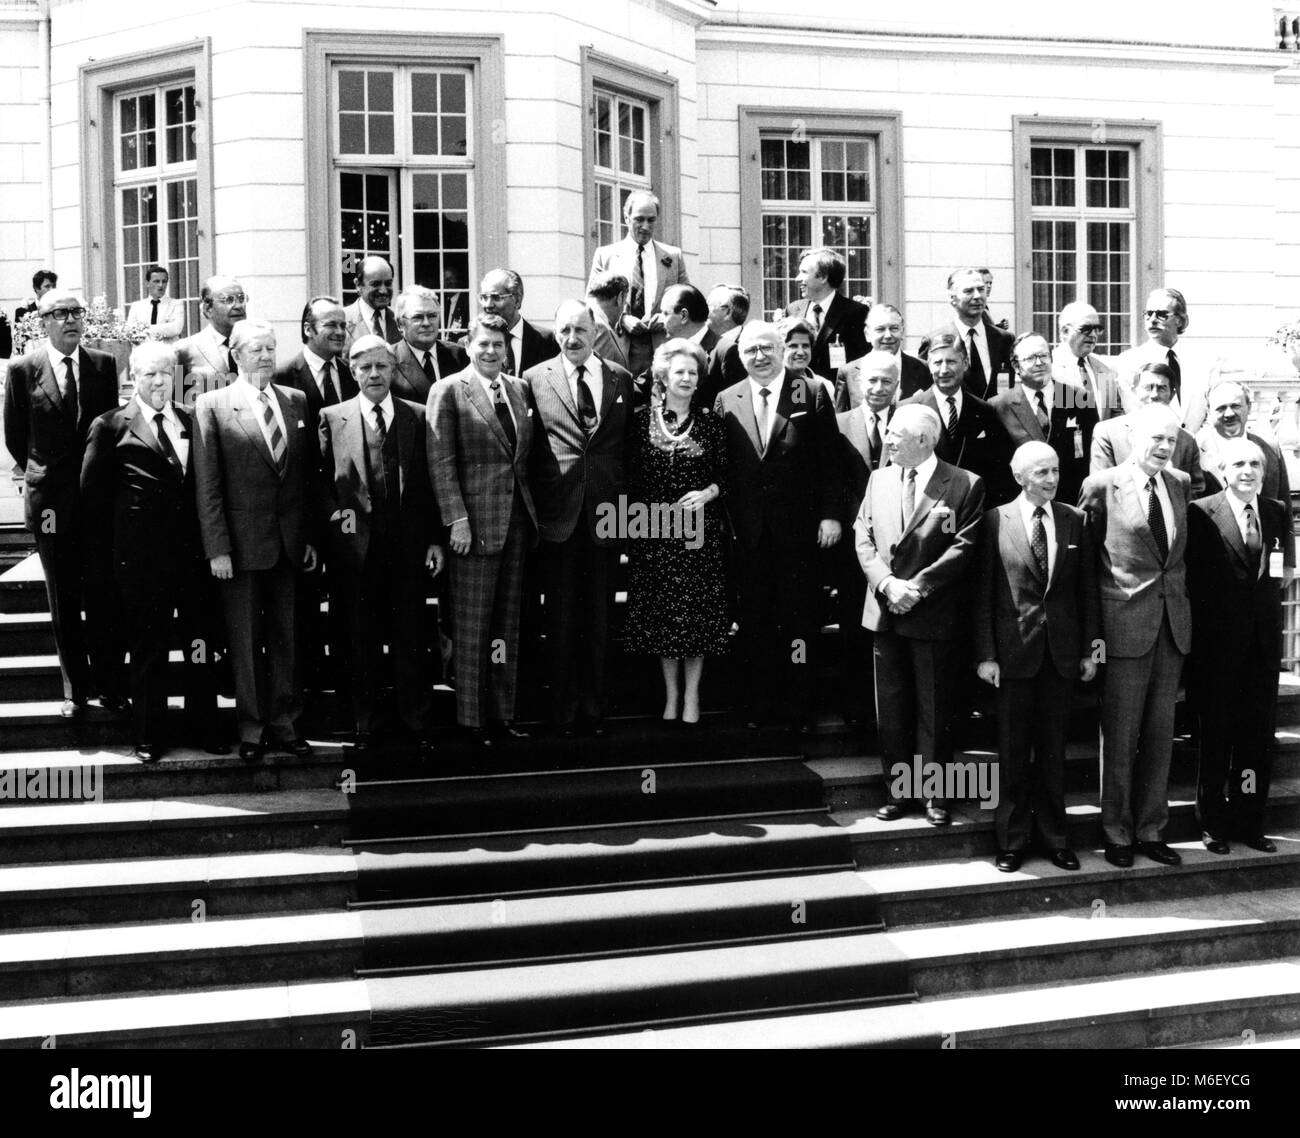 Retrato de los participantes de la Cumbre de la OTAN celebrada en Bonn con U S El presidente Ronald Reagan y otros líderes mundiales como Margaret Thatcher de Gran Bretaña y Pierre Trudeau de Canadá (centro superior), Bonn, Alemania, 6/11/1982. Foto de stock